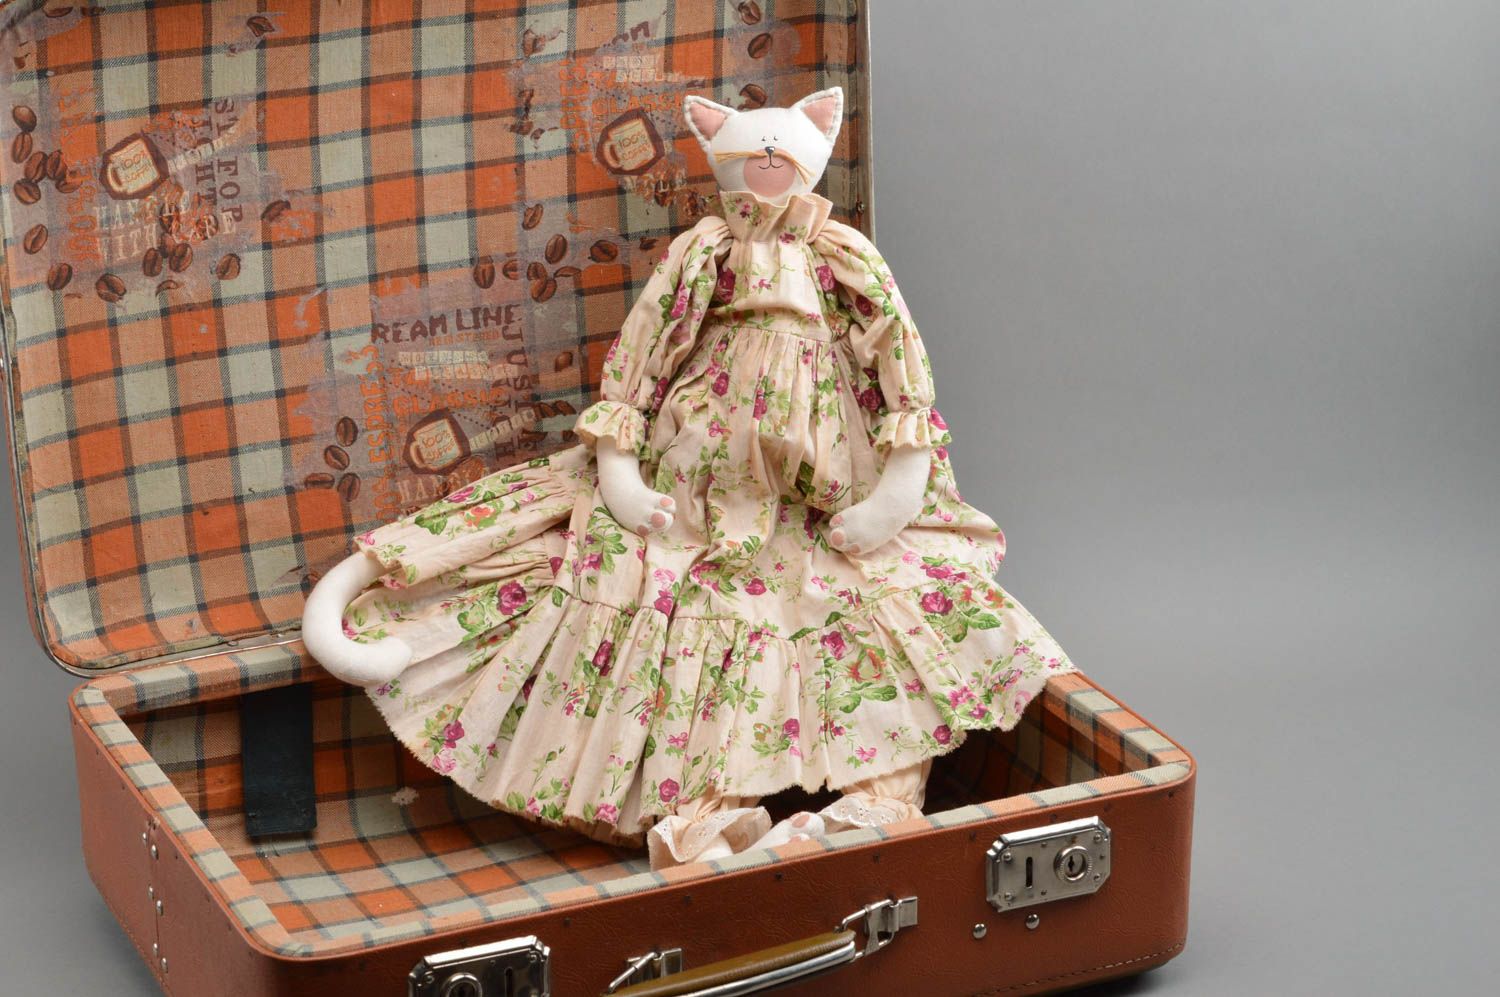 Textil Kuscheltier Katze weiß im blumigen Kleid handmade schön originell foto 1